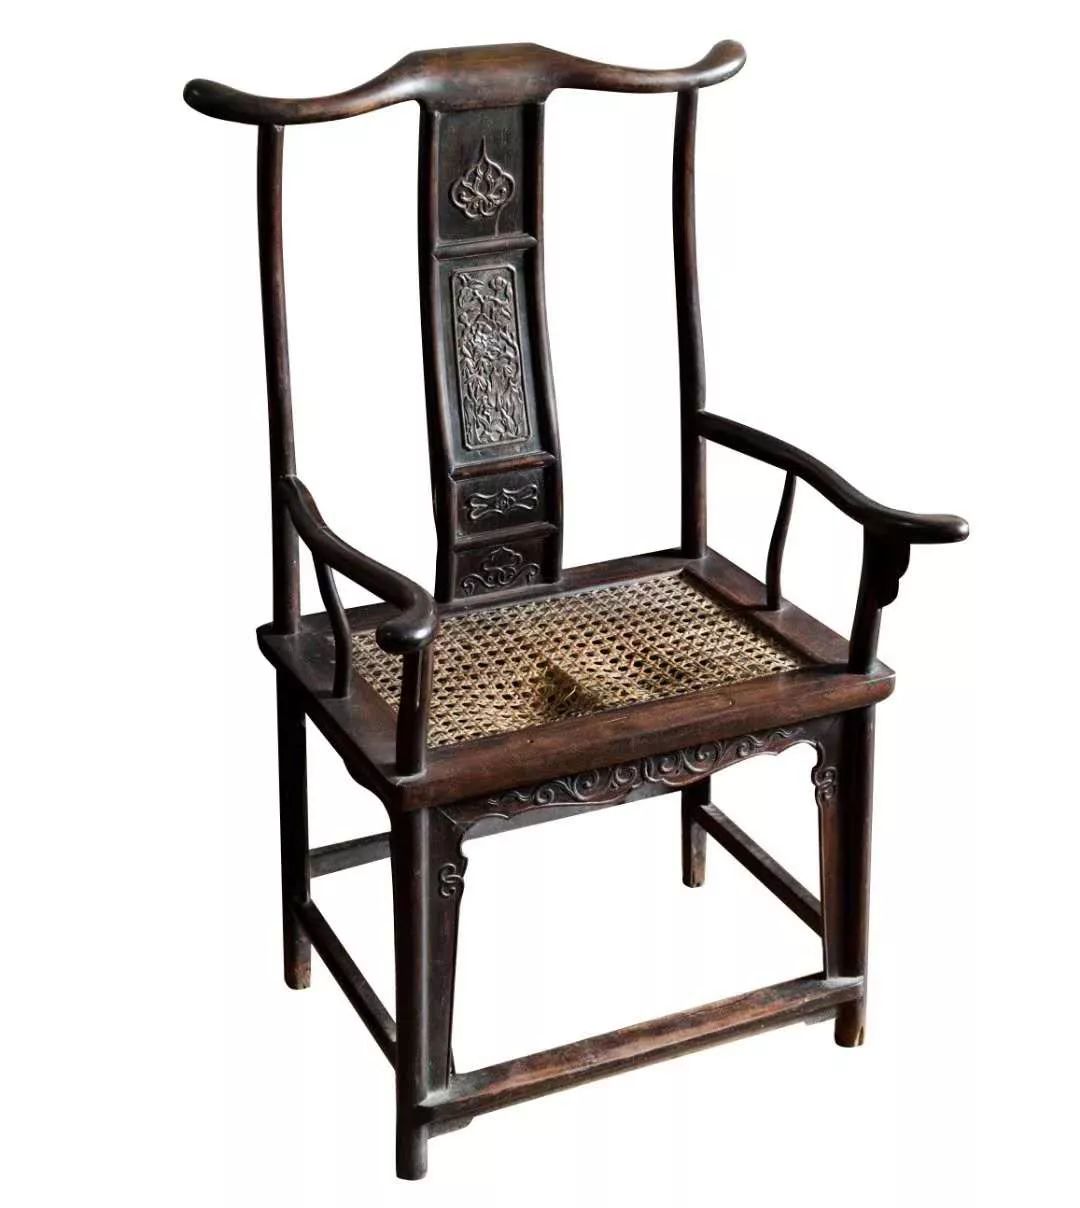 古代椅子有什么讲究?中国古代家具之椅子文化